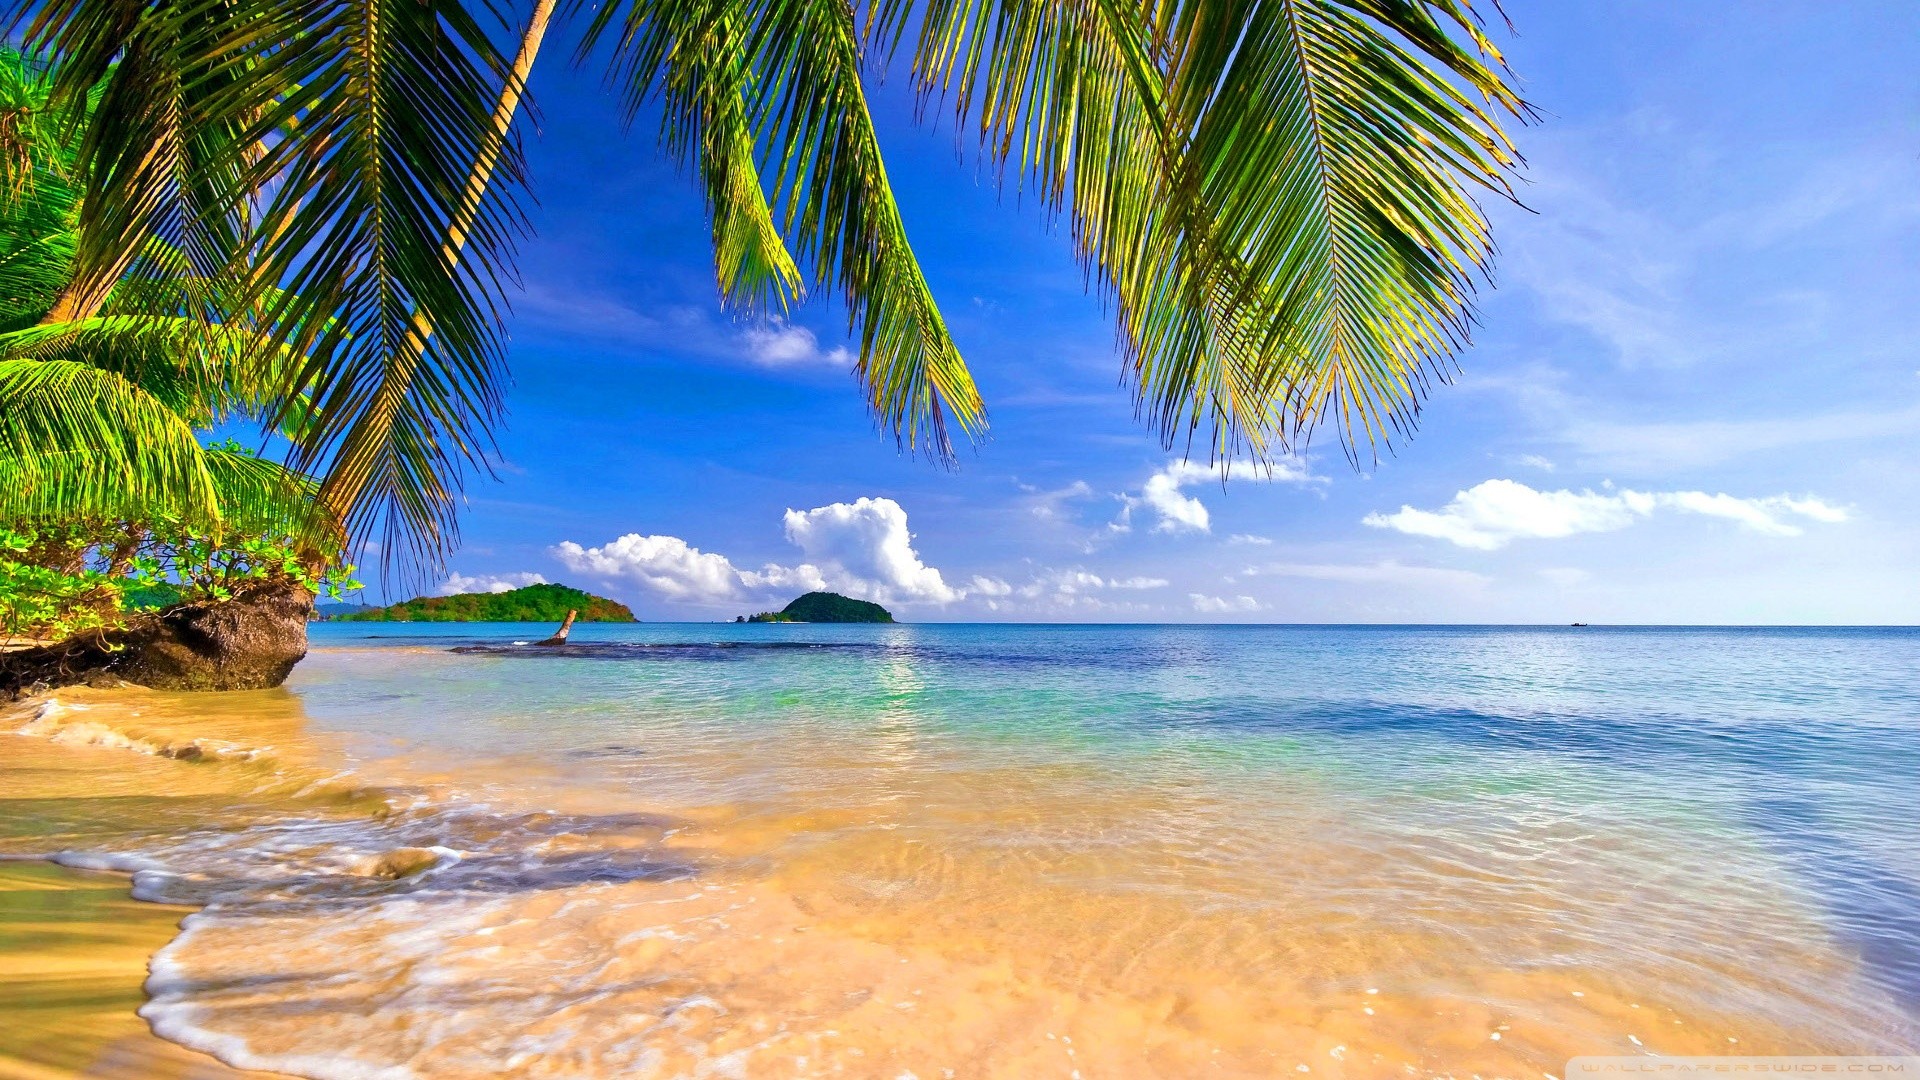 Bãi biển HD - Là một trong những địa điểm tuyệt vời nhất để tránh xa cuộc sống đô thị, bãi biển HD mang đến cho bạn cảm giác thoải mái, tách biệt khỏi sự ồn ào của thế giới bên ngoài. Với nắng vàng rực rỡ, cát trắng và biển xanh thẳm, bãi biển HD mang đến một thế giới hoàn hảo cho bạn cùng gia đình và bạn bè.